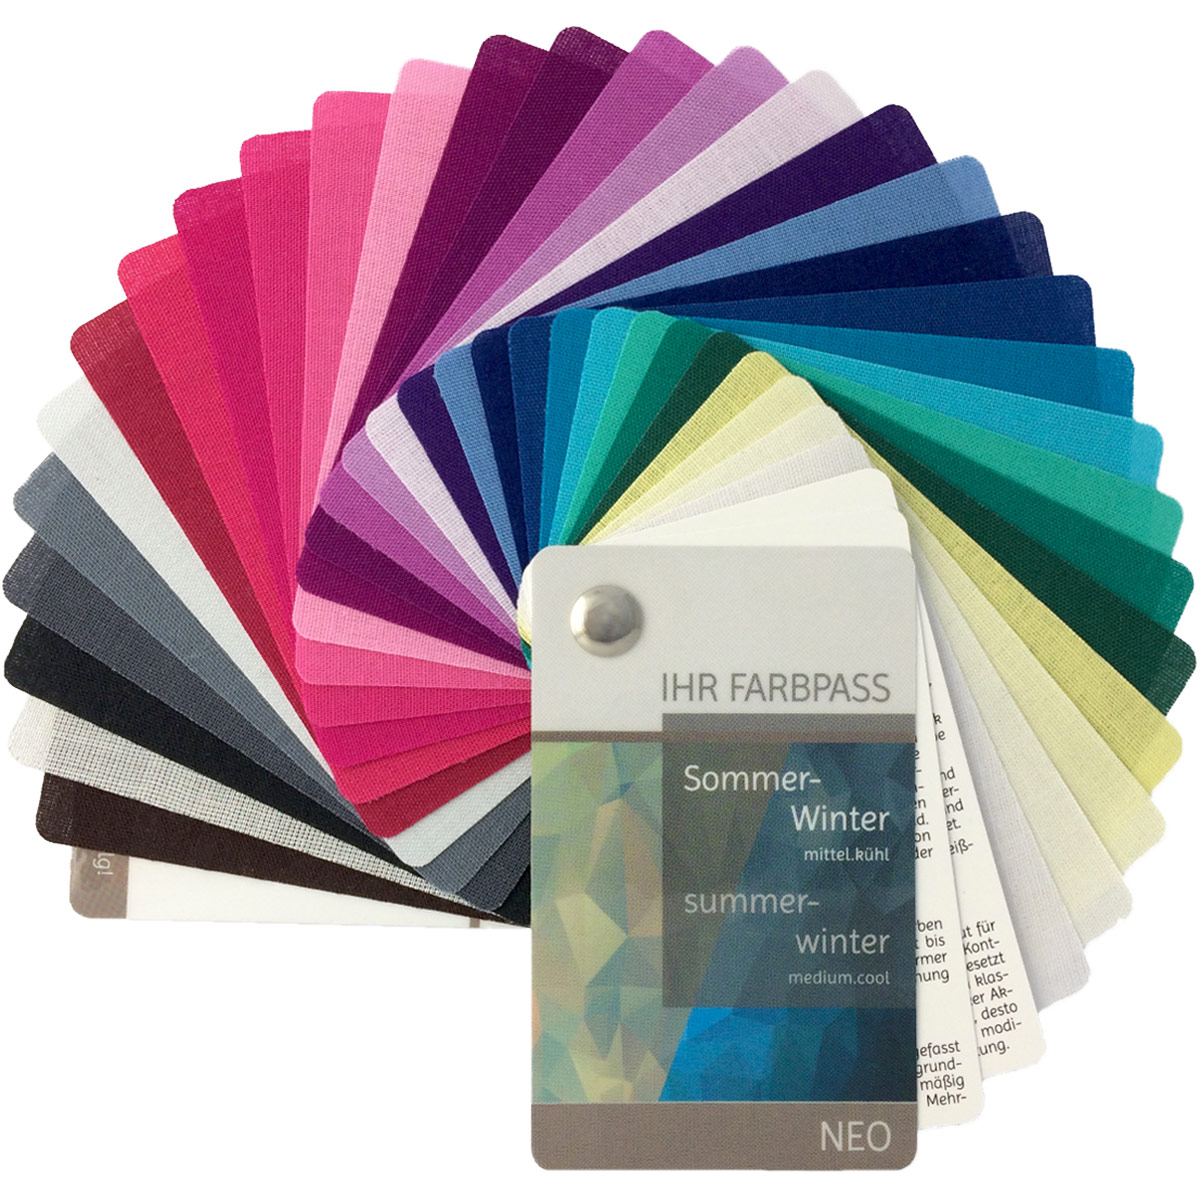 Farbpass Sommer-Winter mit 35 Farben "Elegance" zur Farbberatung 